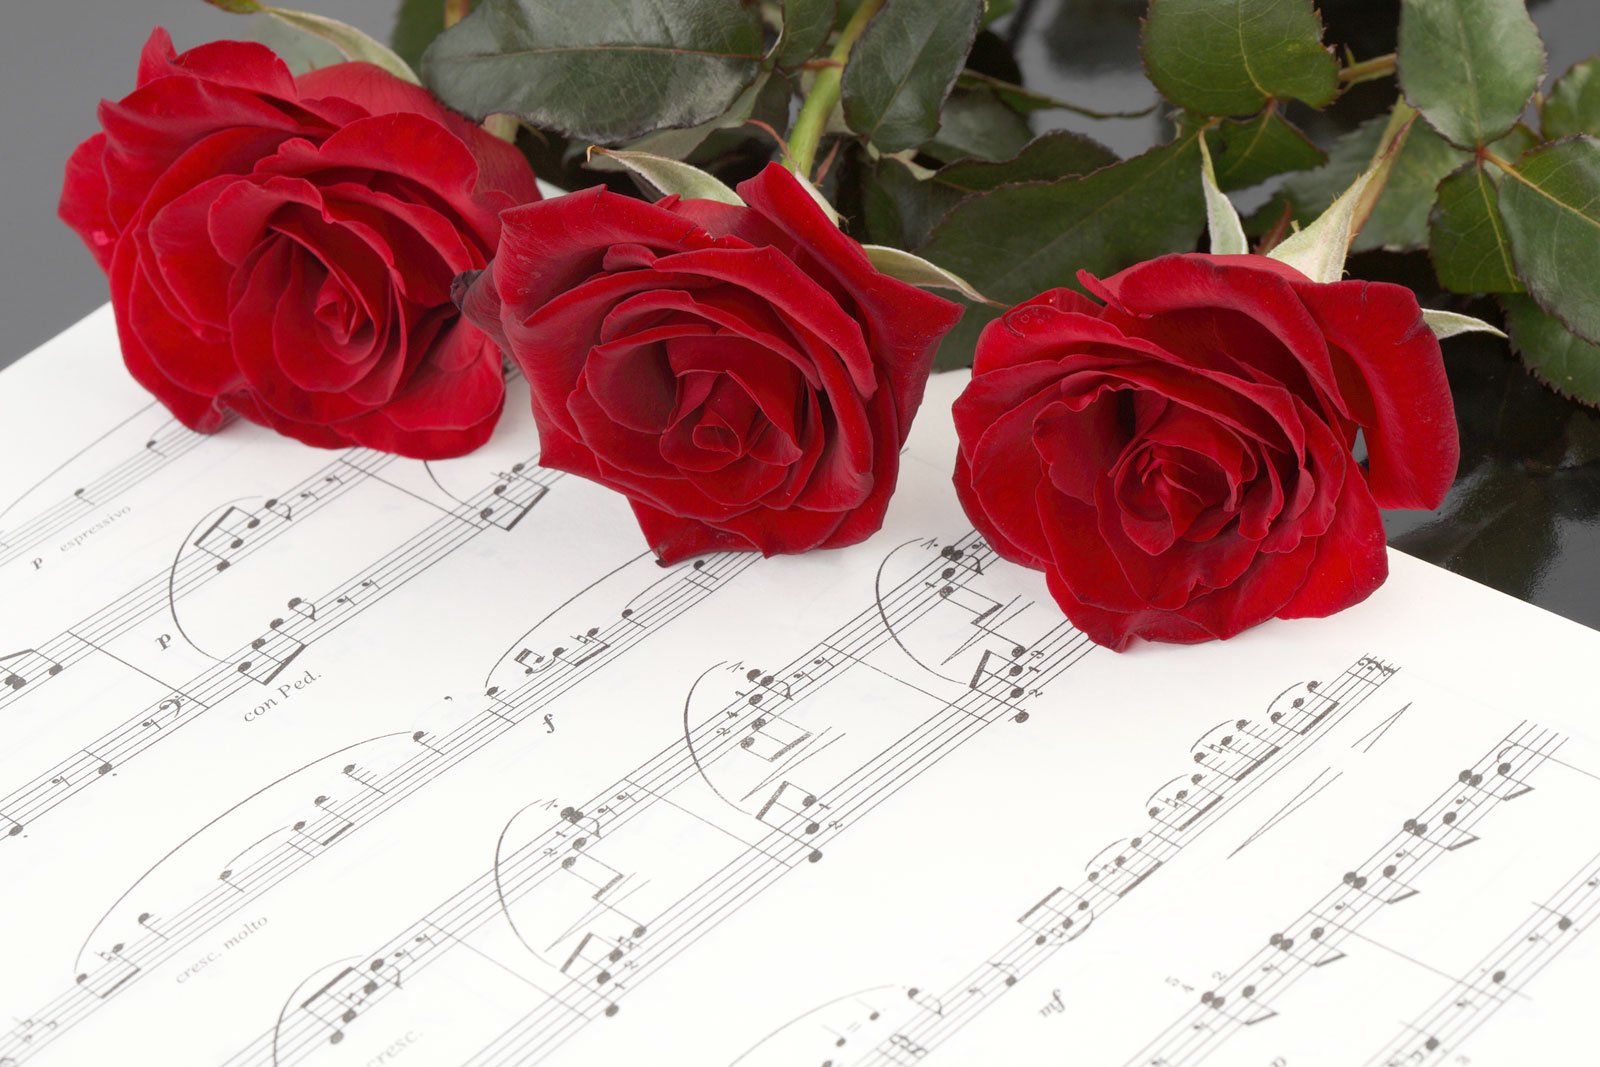 Песня красивый учитель. Цветы для музыканта. Красивые цветы с нотками. Ноты и цветы. Открытка с юбилеем музыканту.